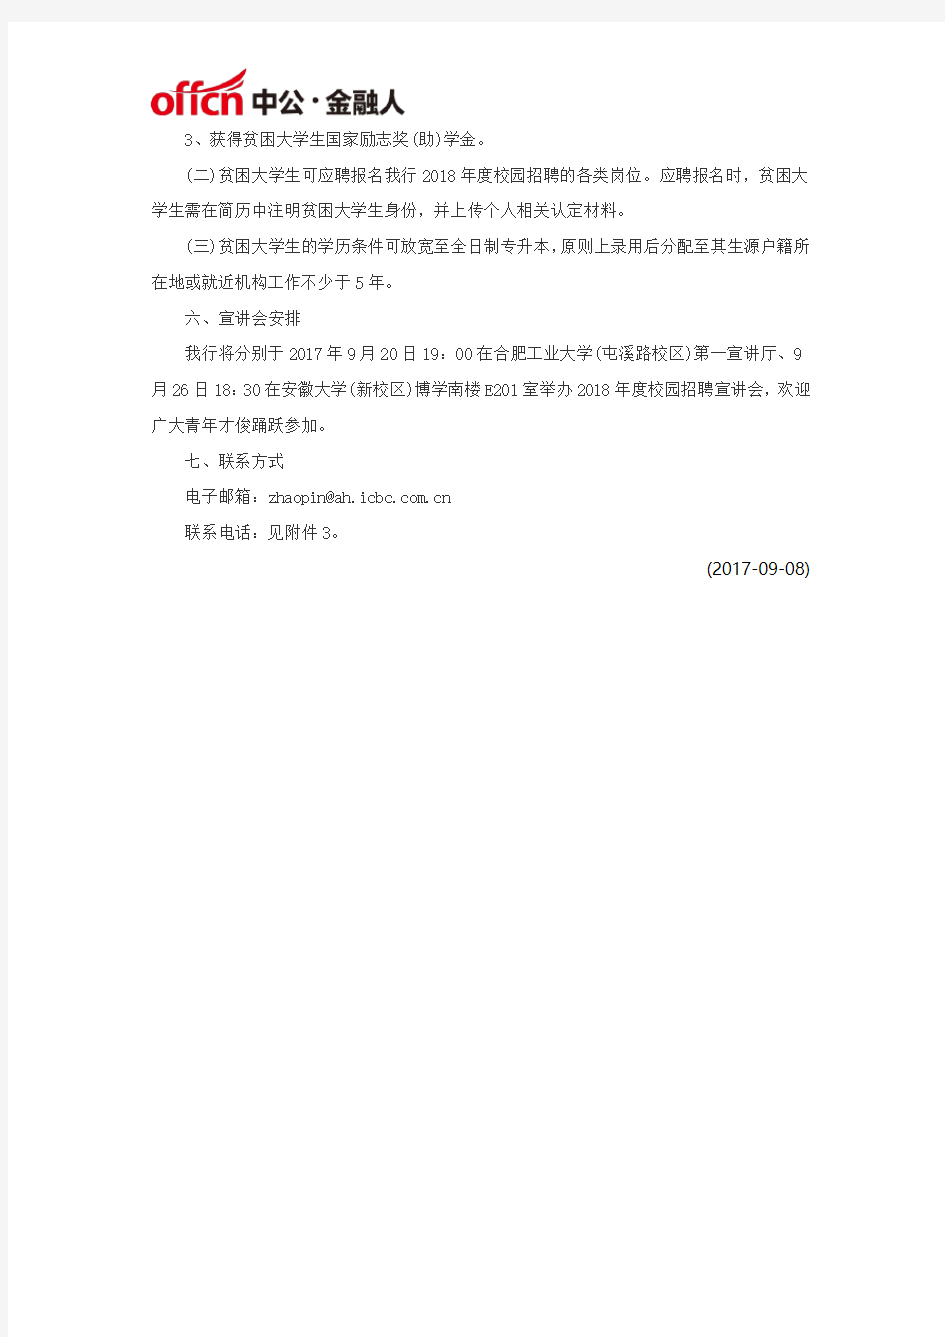 2018年度中国工商银行安徽分行校园招聘公告